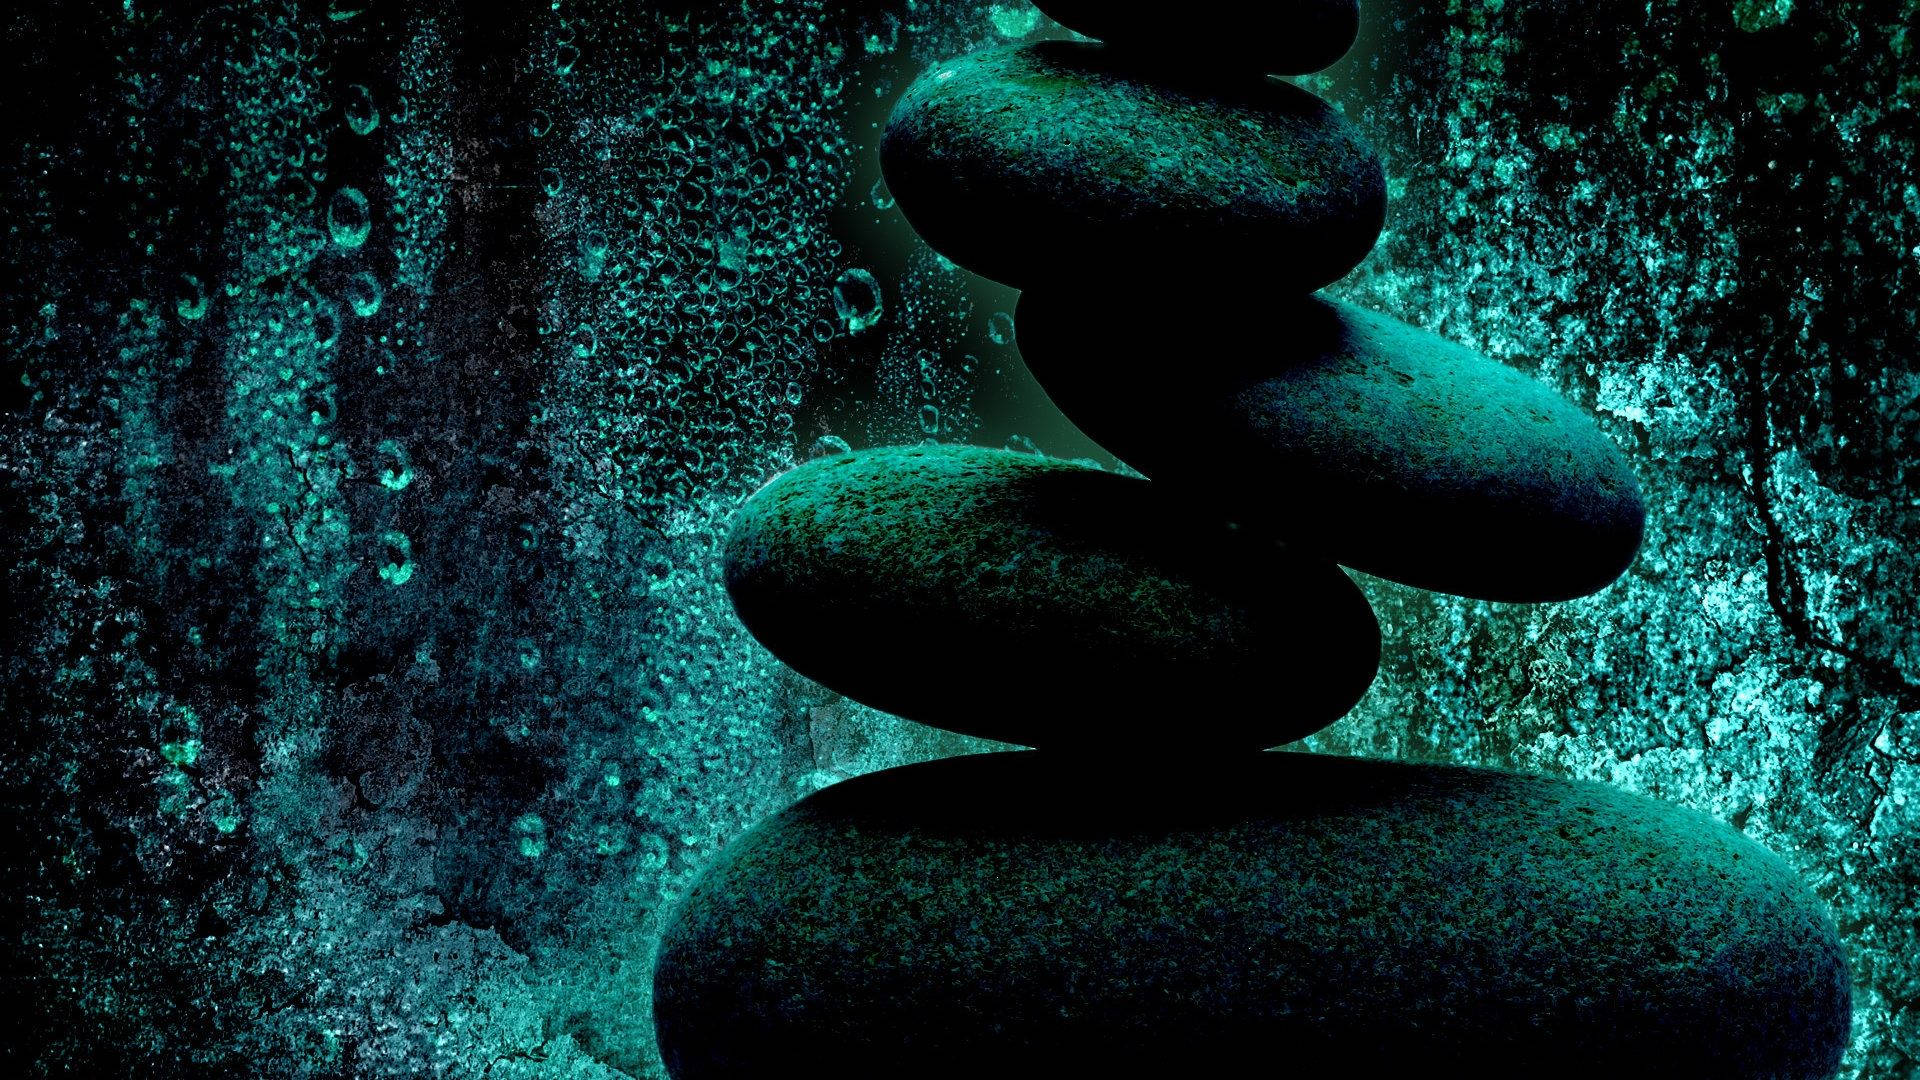 Pilhasimbólica E Equilibrada De Pedras Papel de Parede